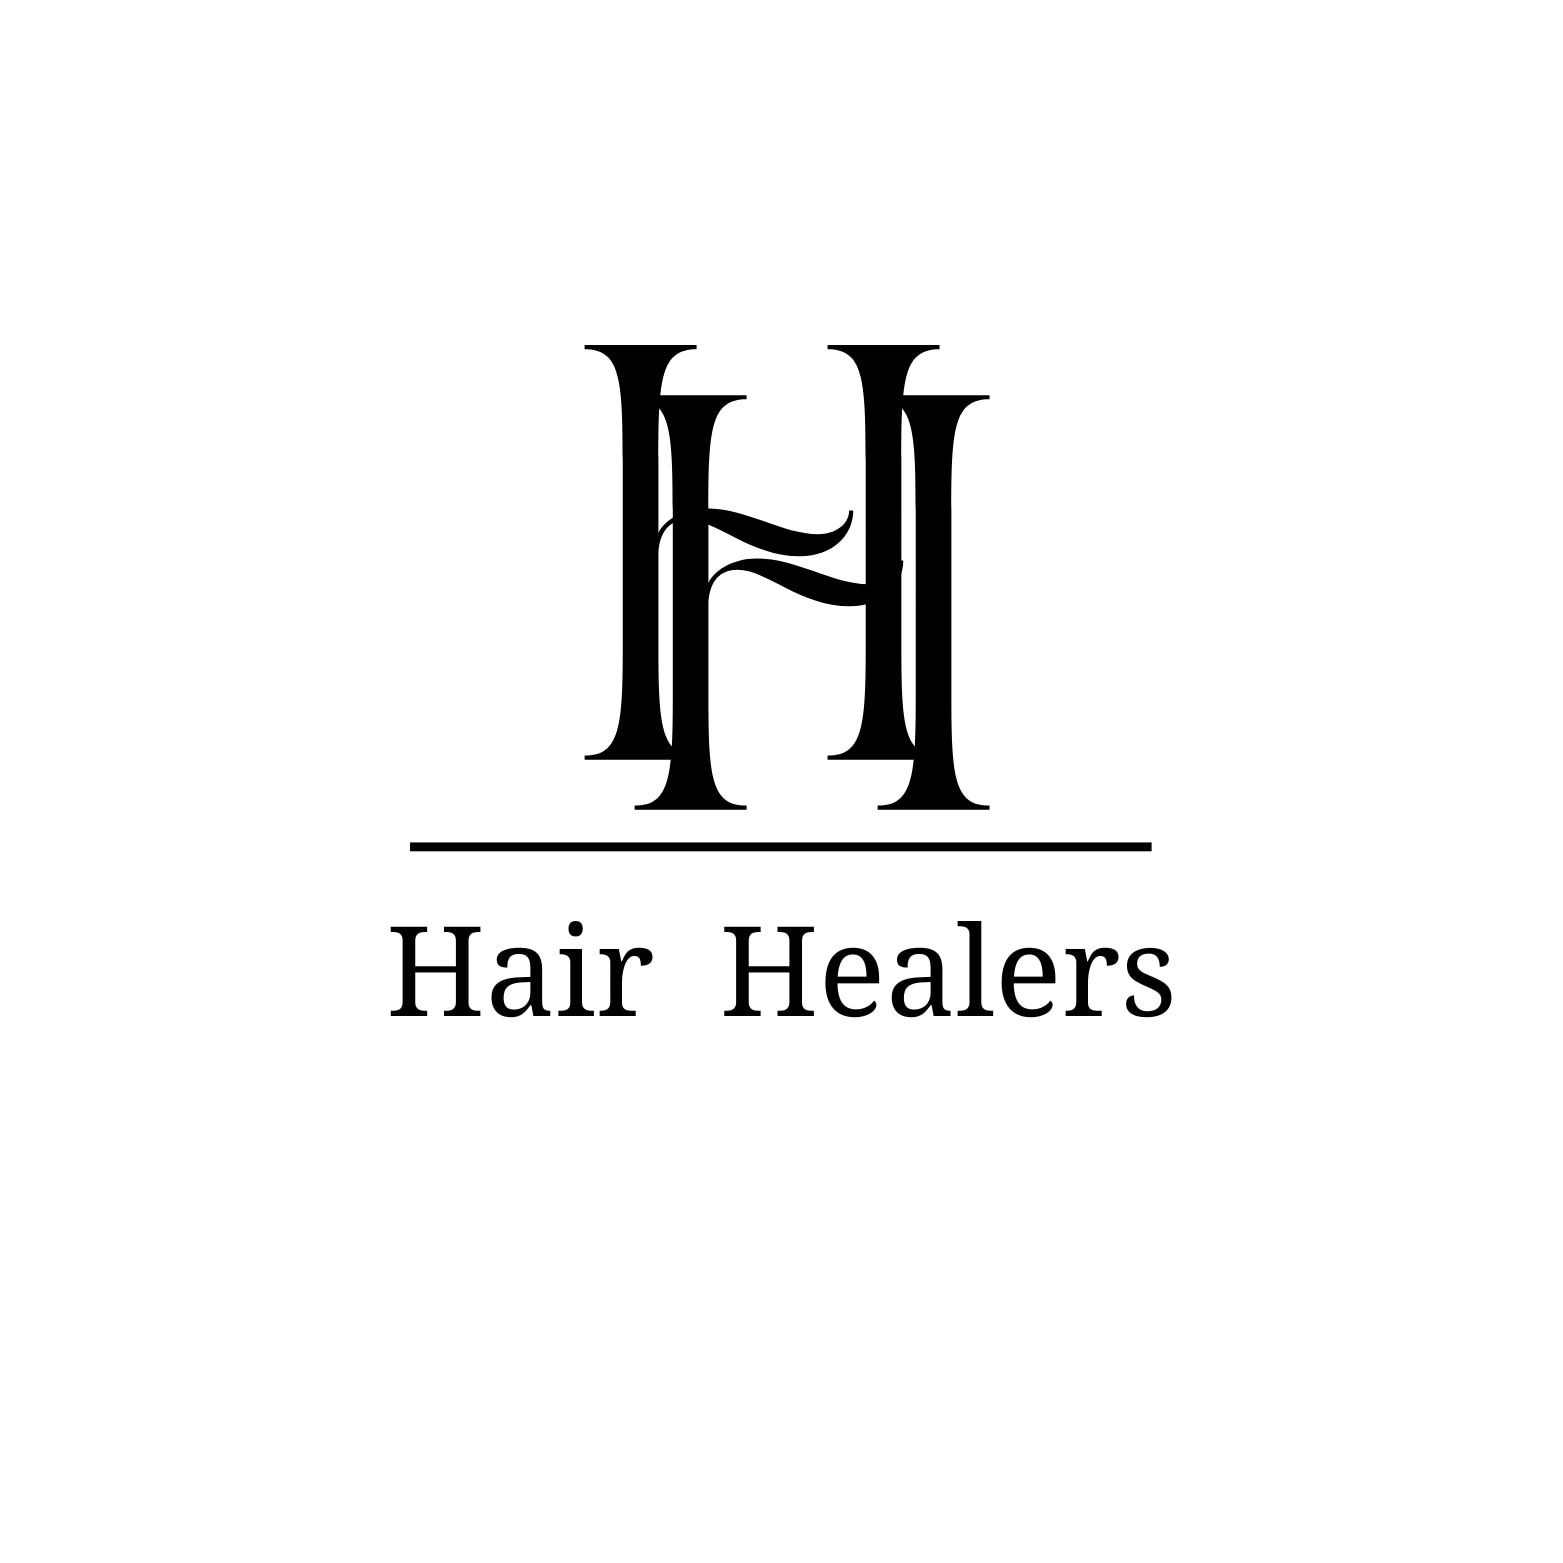 Hair Healers